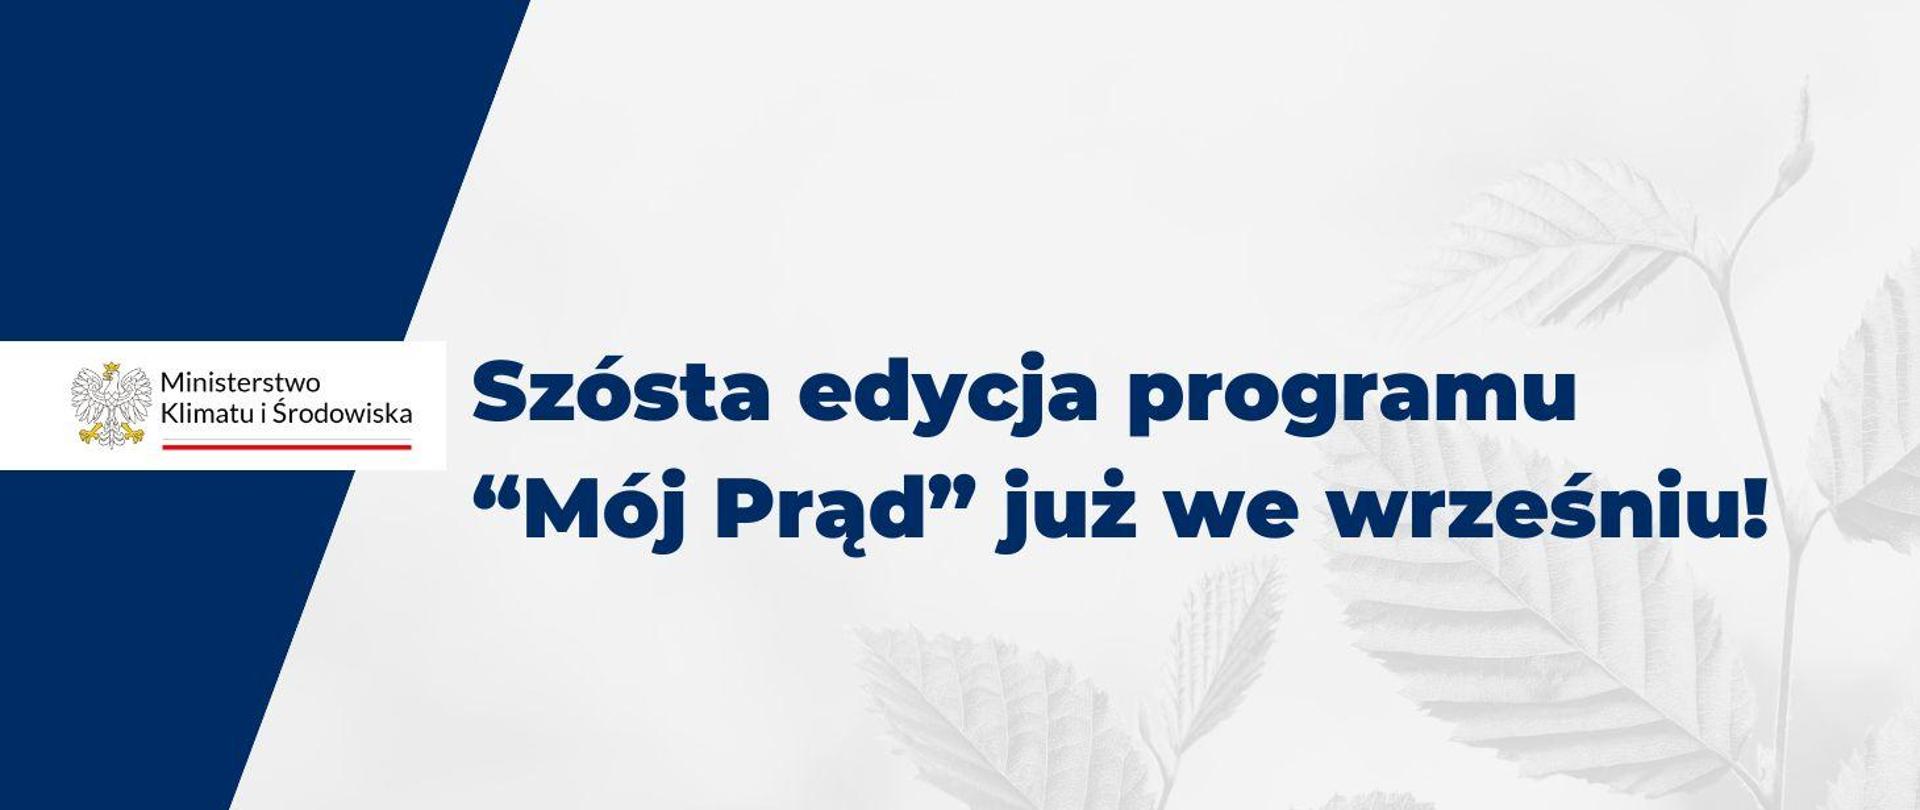 Szósta edycja programu “Mój Prąd” już we wrześniu! 